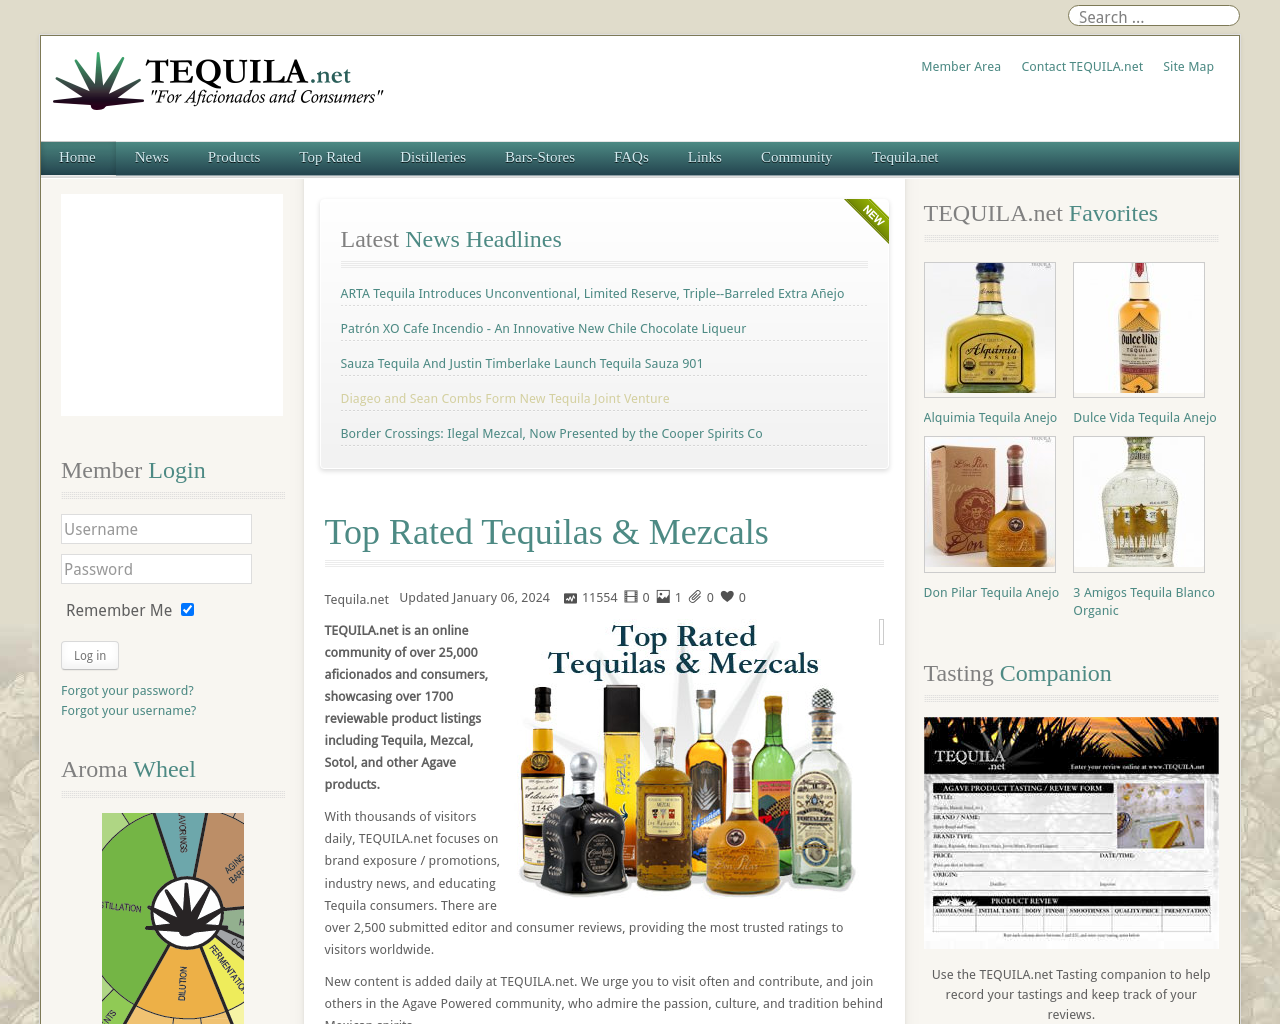 tequila.net